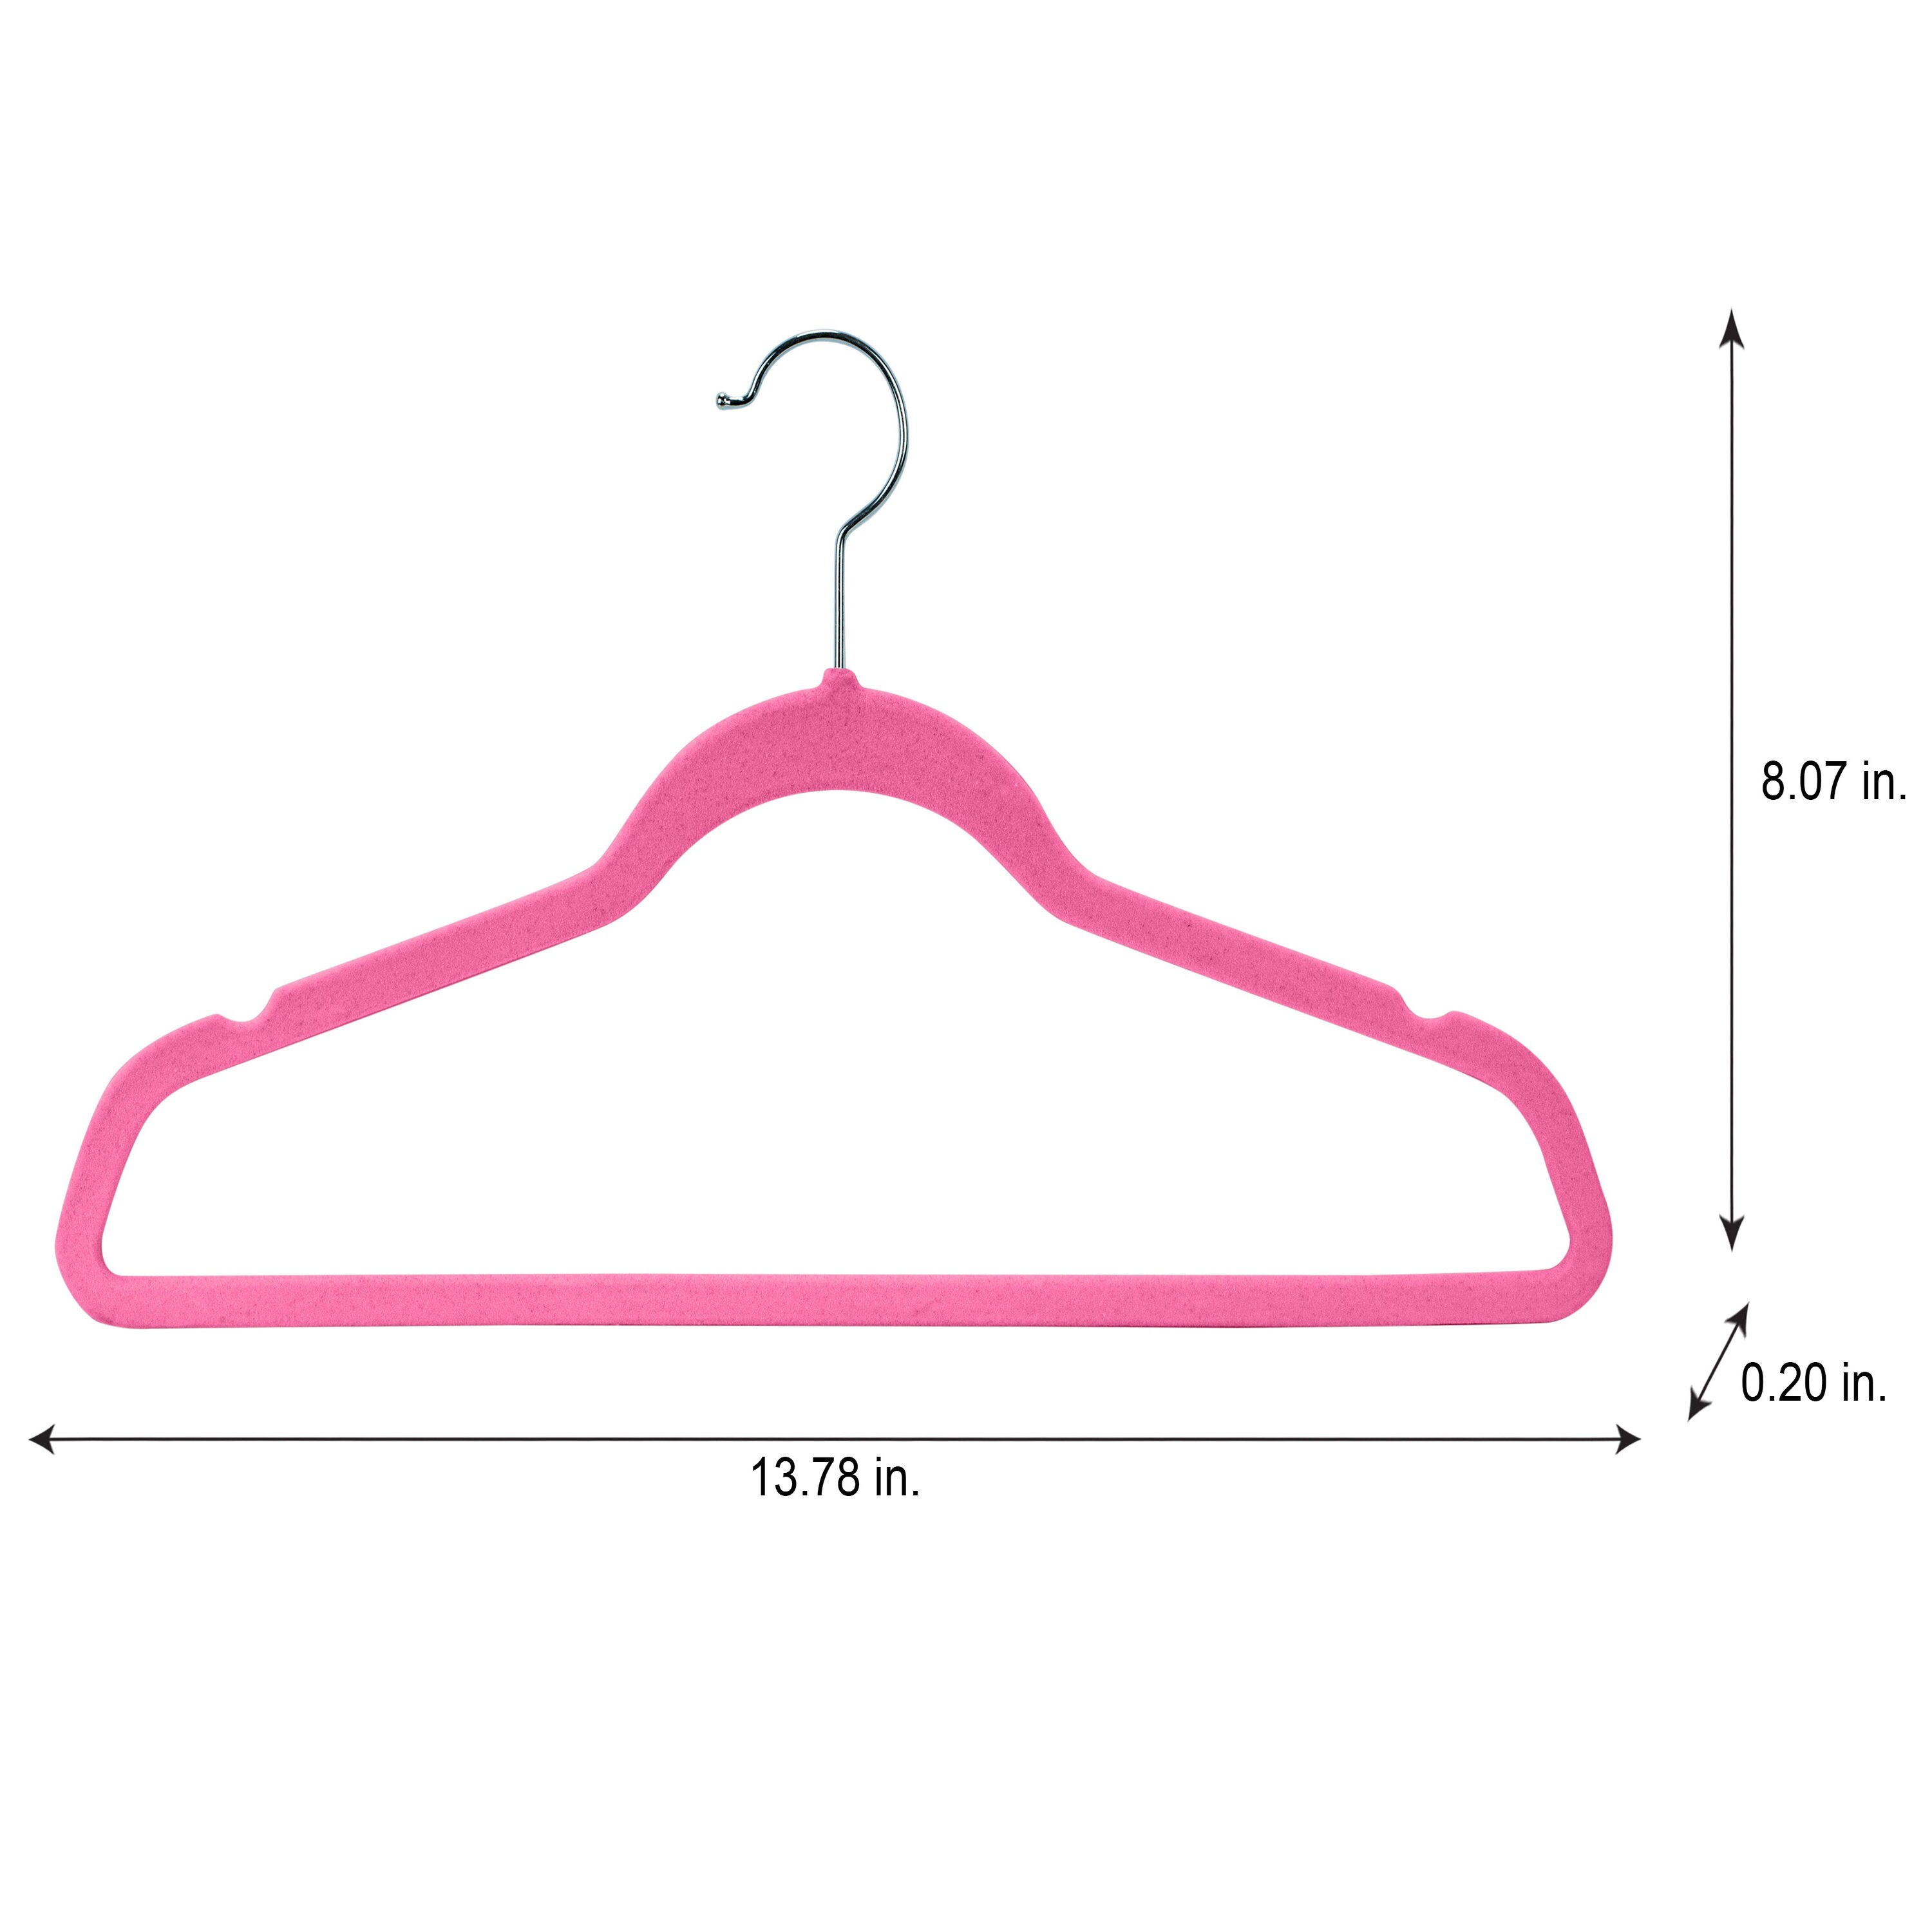 Simplify Kids 50 Pack Velvet Hangers in Pink 